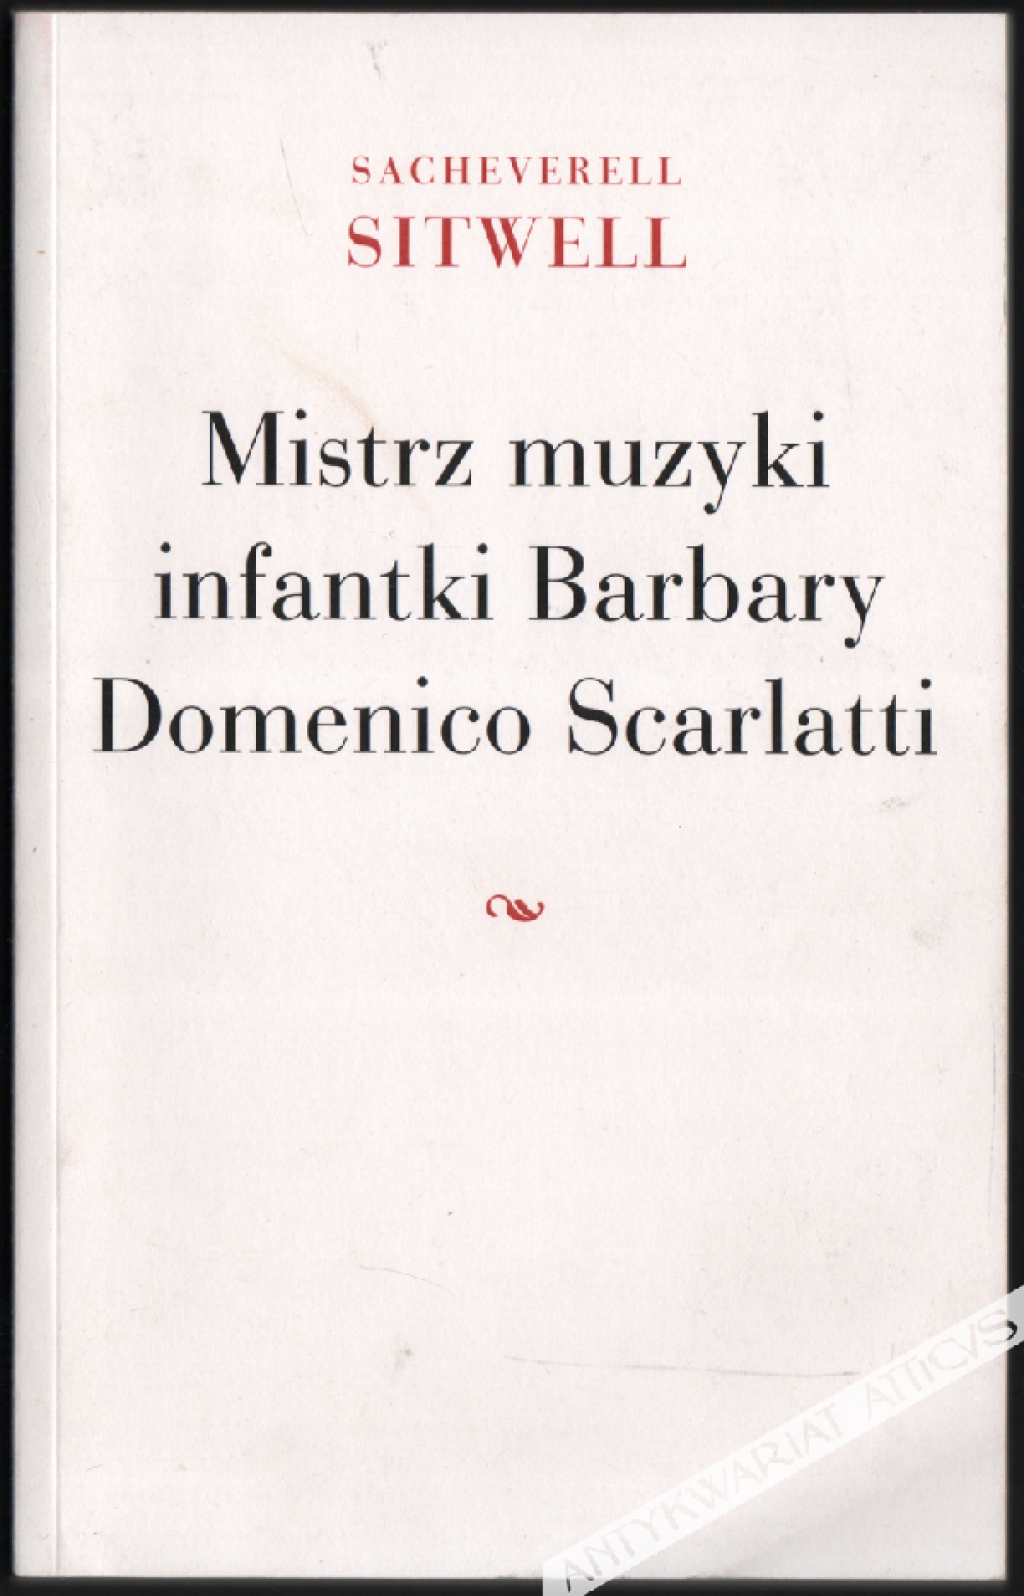 Mistrz muzyki infantki Barbary. Domenico Scarlatti